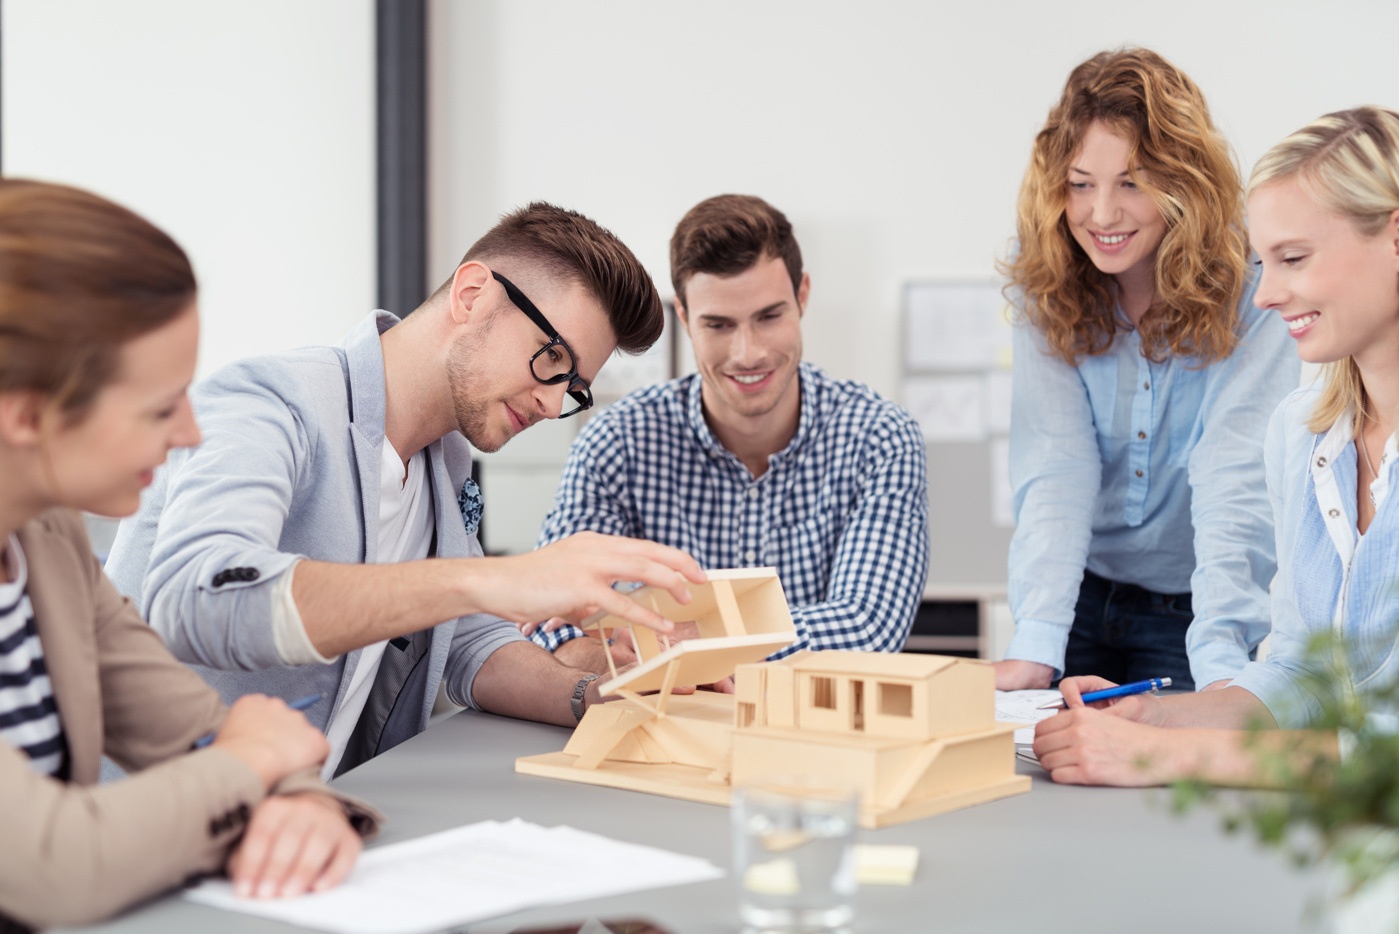 Architecture Bachelor Des étudiants et étudiantes d'une haute école spécialisée créent un modèle de maison en bois pour un travail de projet.